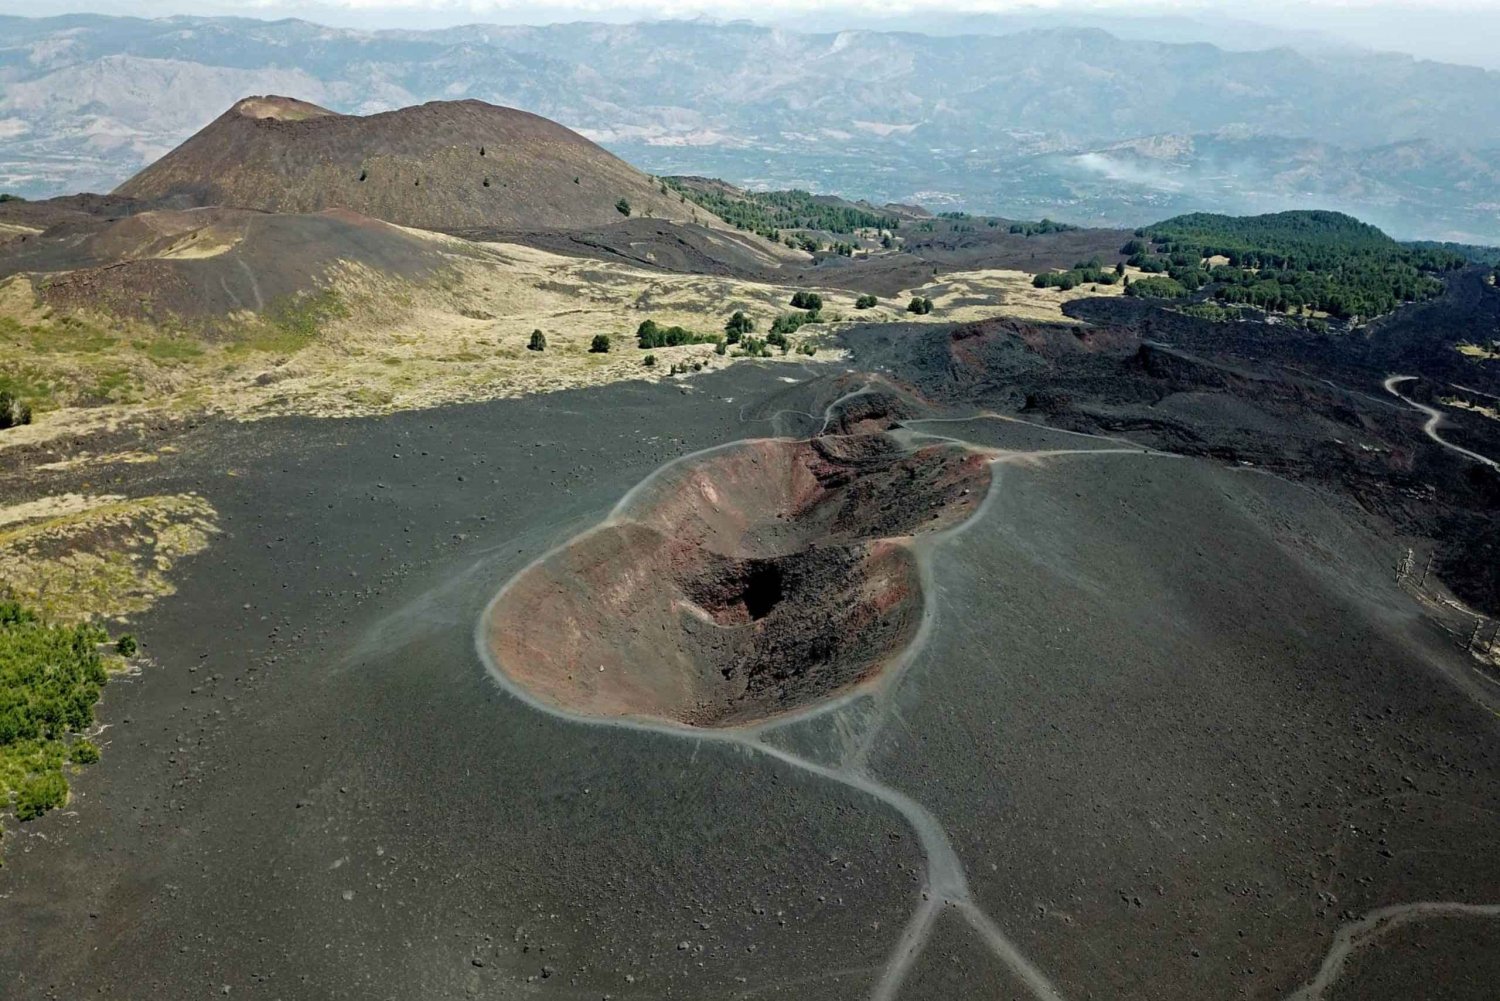 Etna 1800mt en Alcantara kloven